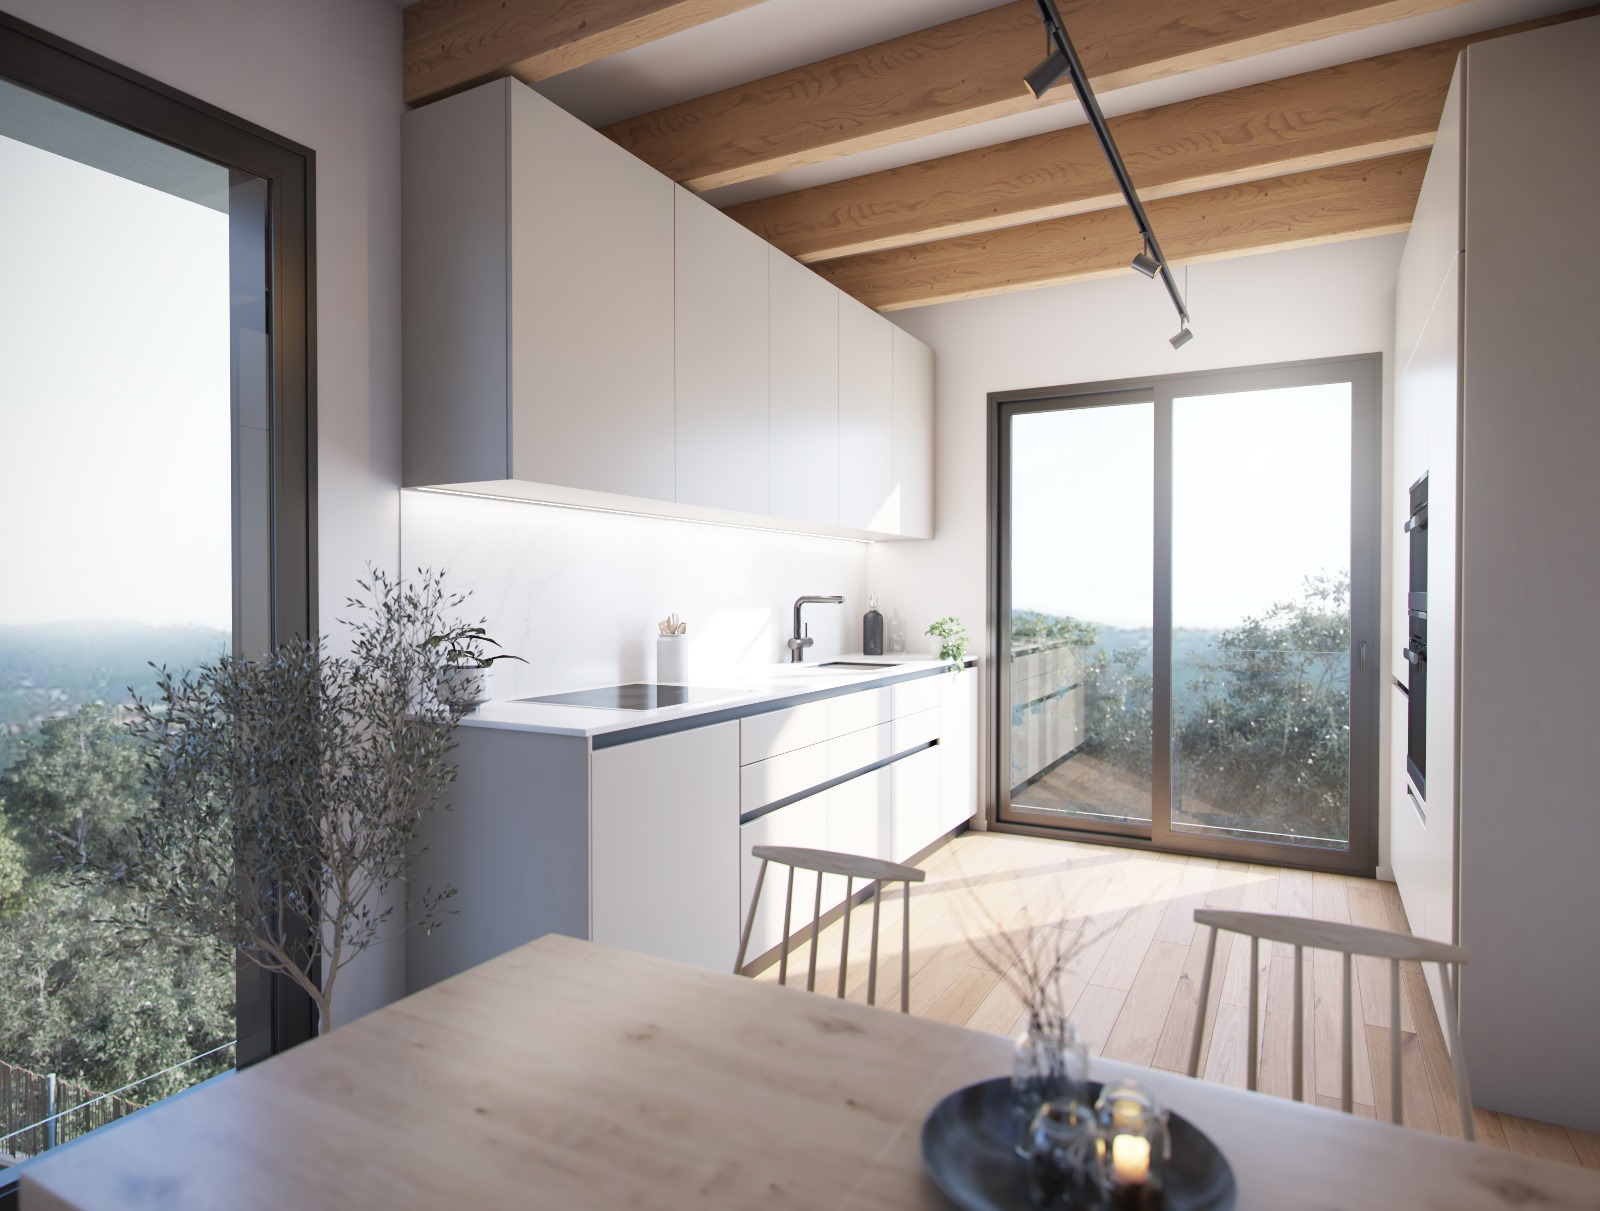 Promoción única de viviendas Eco-eficientes en La Floresta (Sant Cugat).